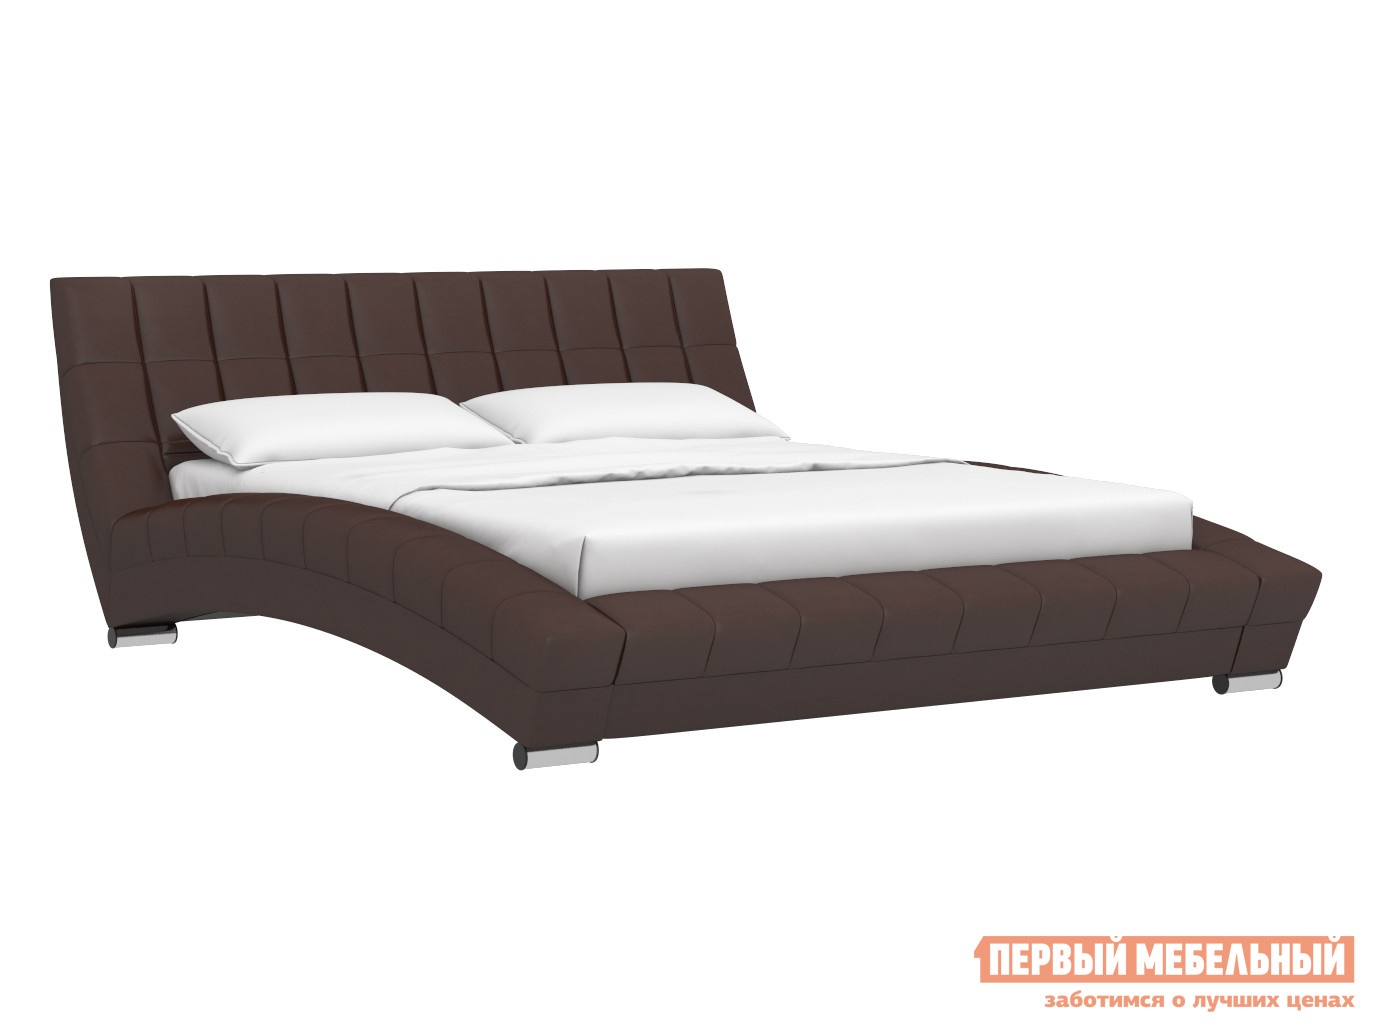 Двуспальная кровать кровать оливия темно-коричневый, экокожа, 1600 х 2000 мм